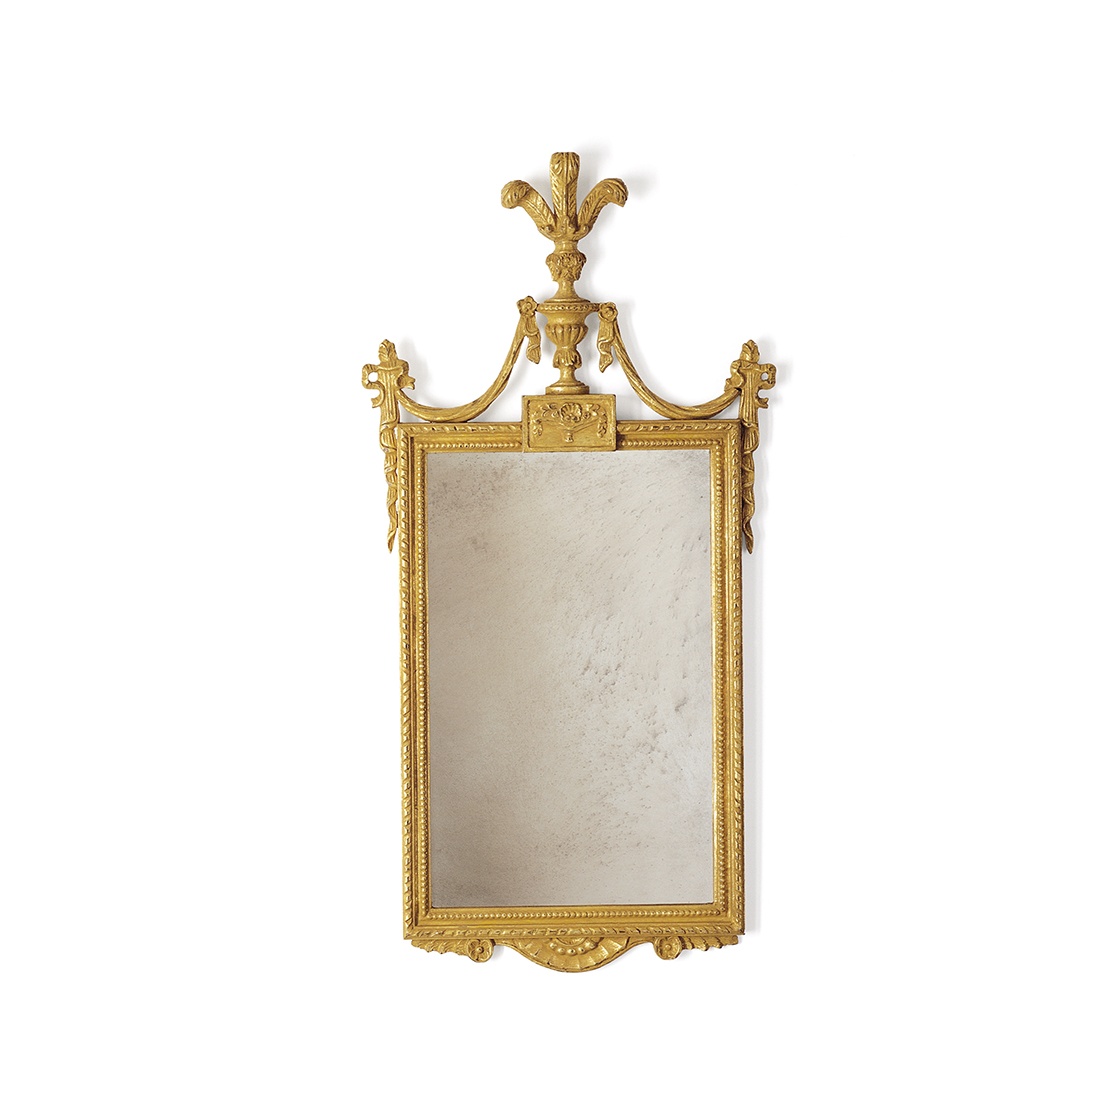 Windsor mirror in Burnt gold - Beaumont & Fletcher